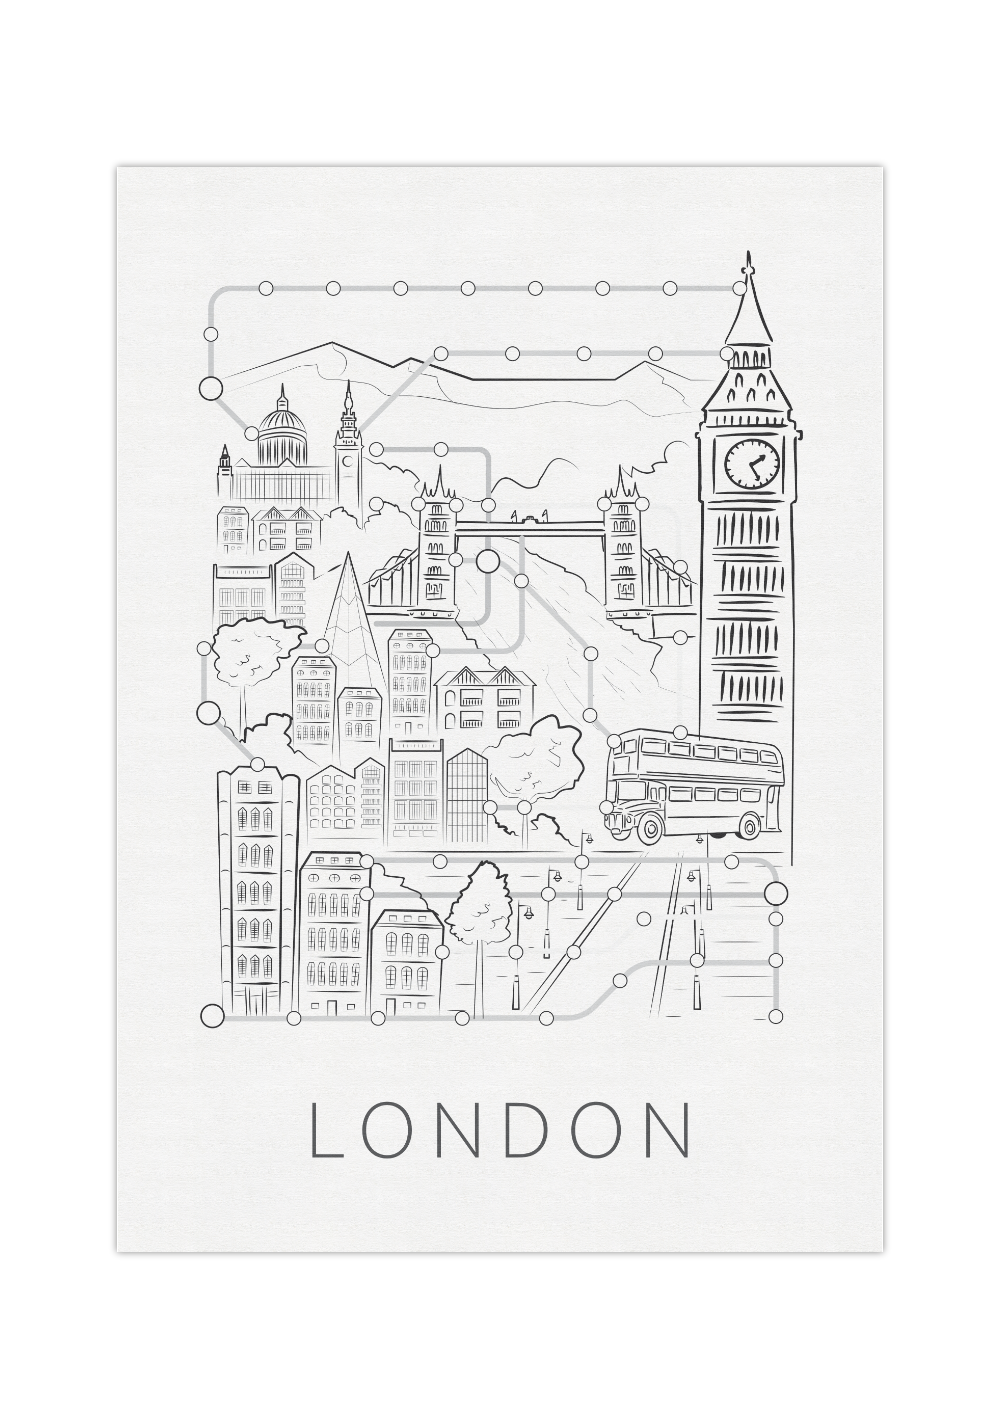 Das schwarz weiß Poster zeigt dir einen Stadtplan/Fahrplan von der Hauptstadt England, London. Auf dem sind die typischen Londoner Sehenswürdigkeiten zeigt.